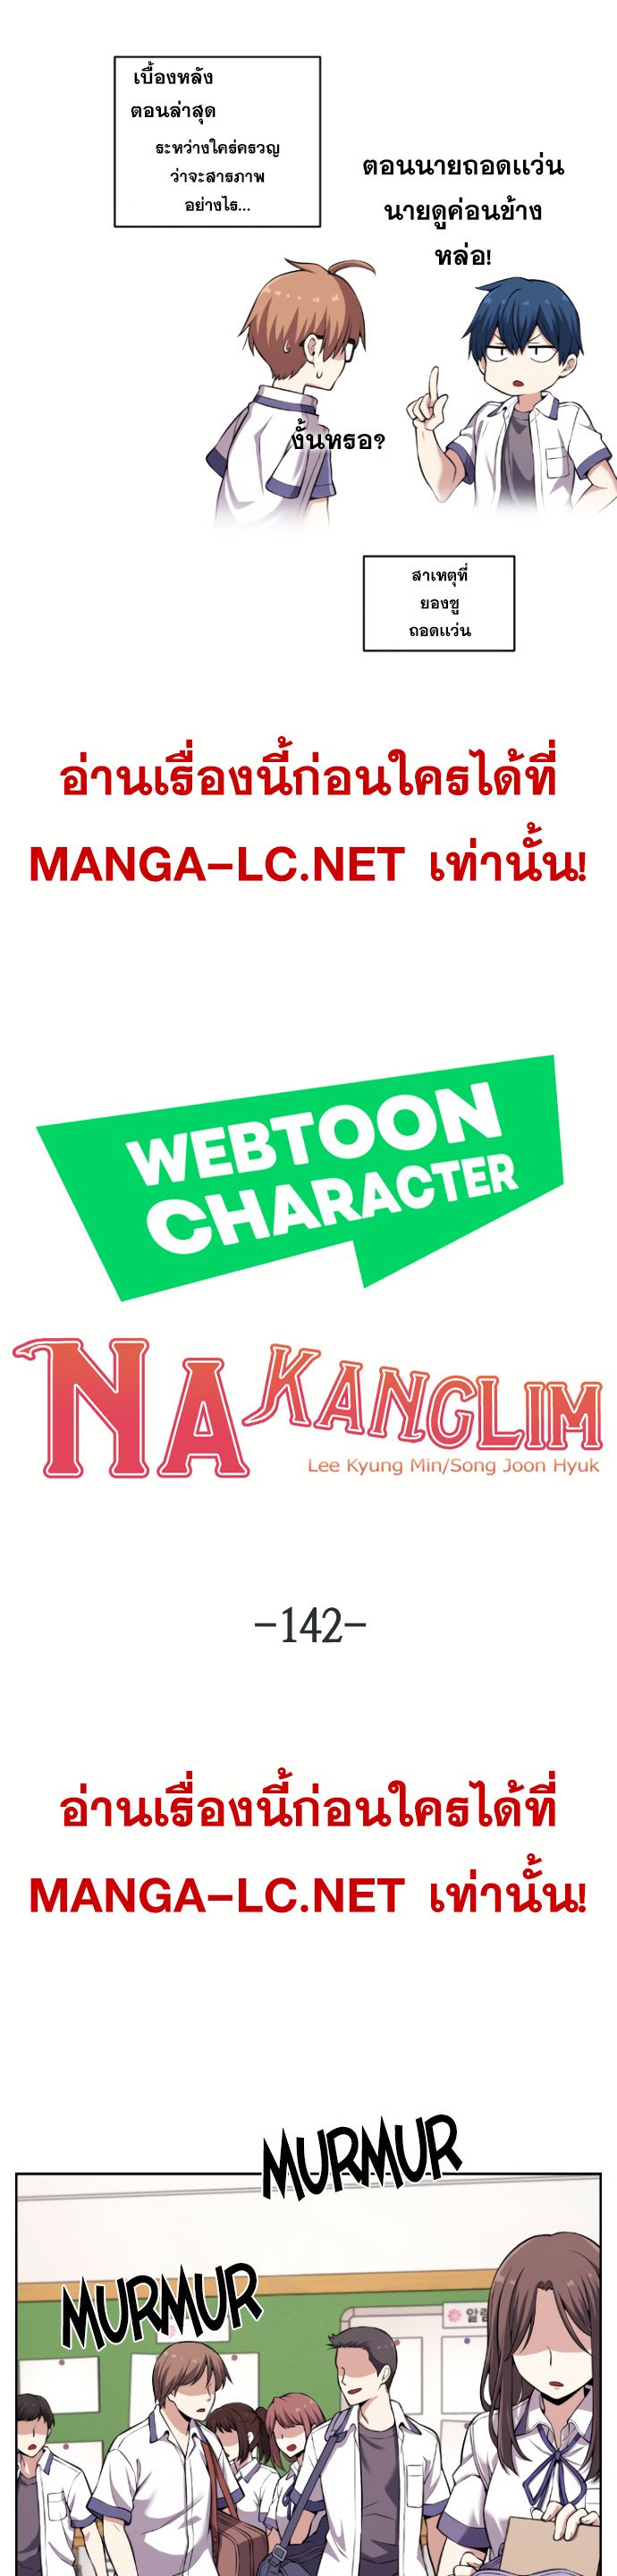 Webtoon Character Na Kang Lim ตอนที่ 142 (22)